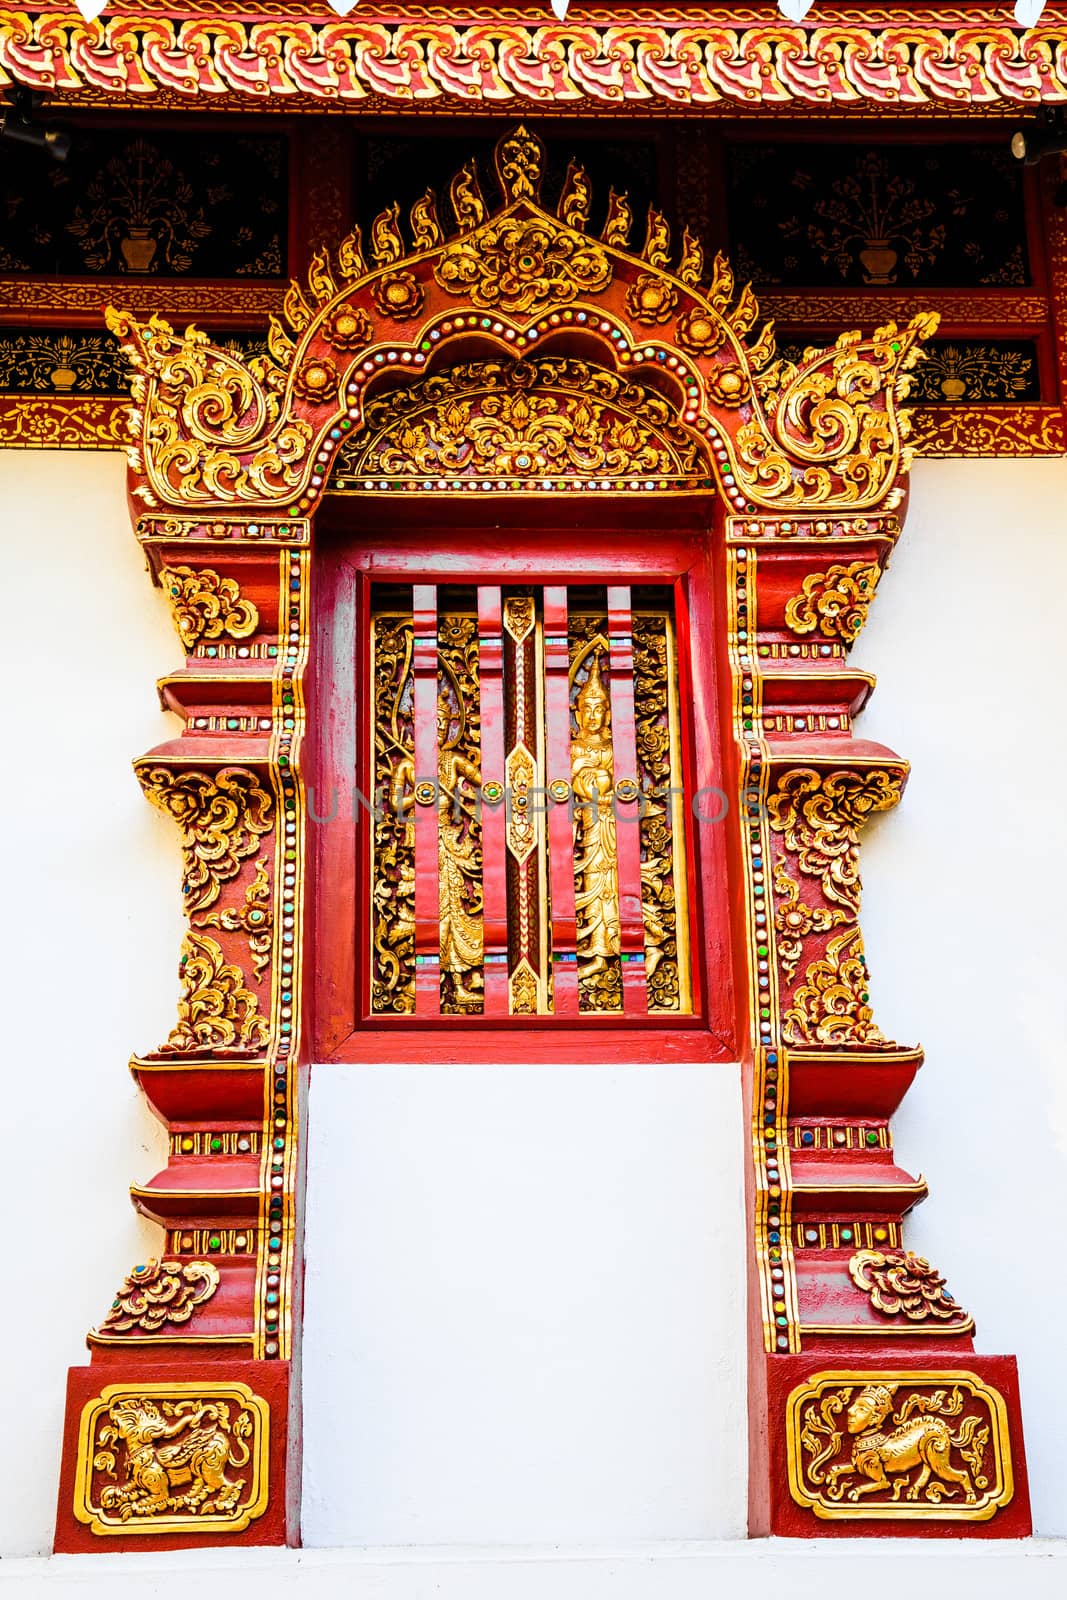 Decoration on lanna style temple window, thailand